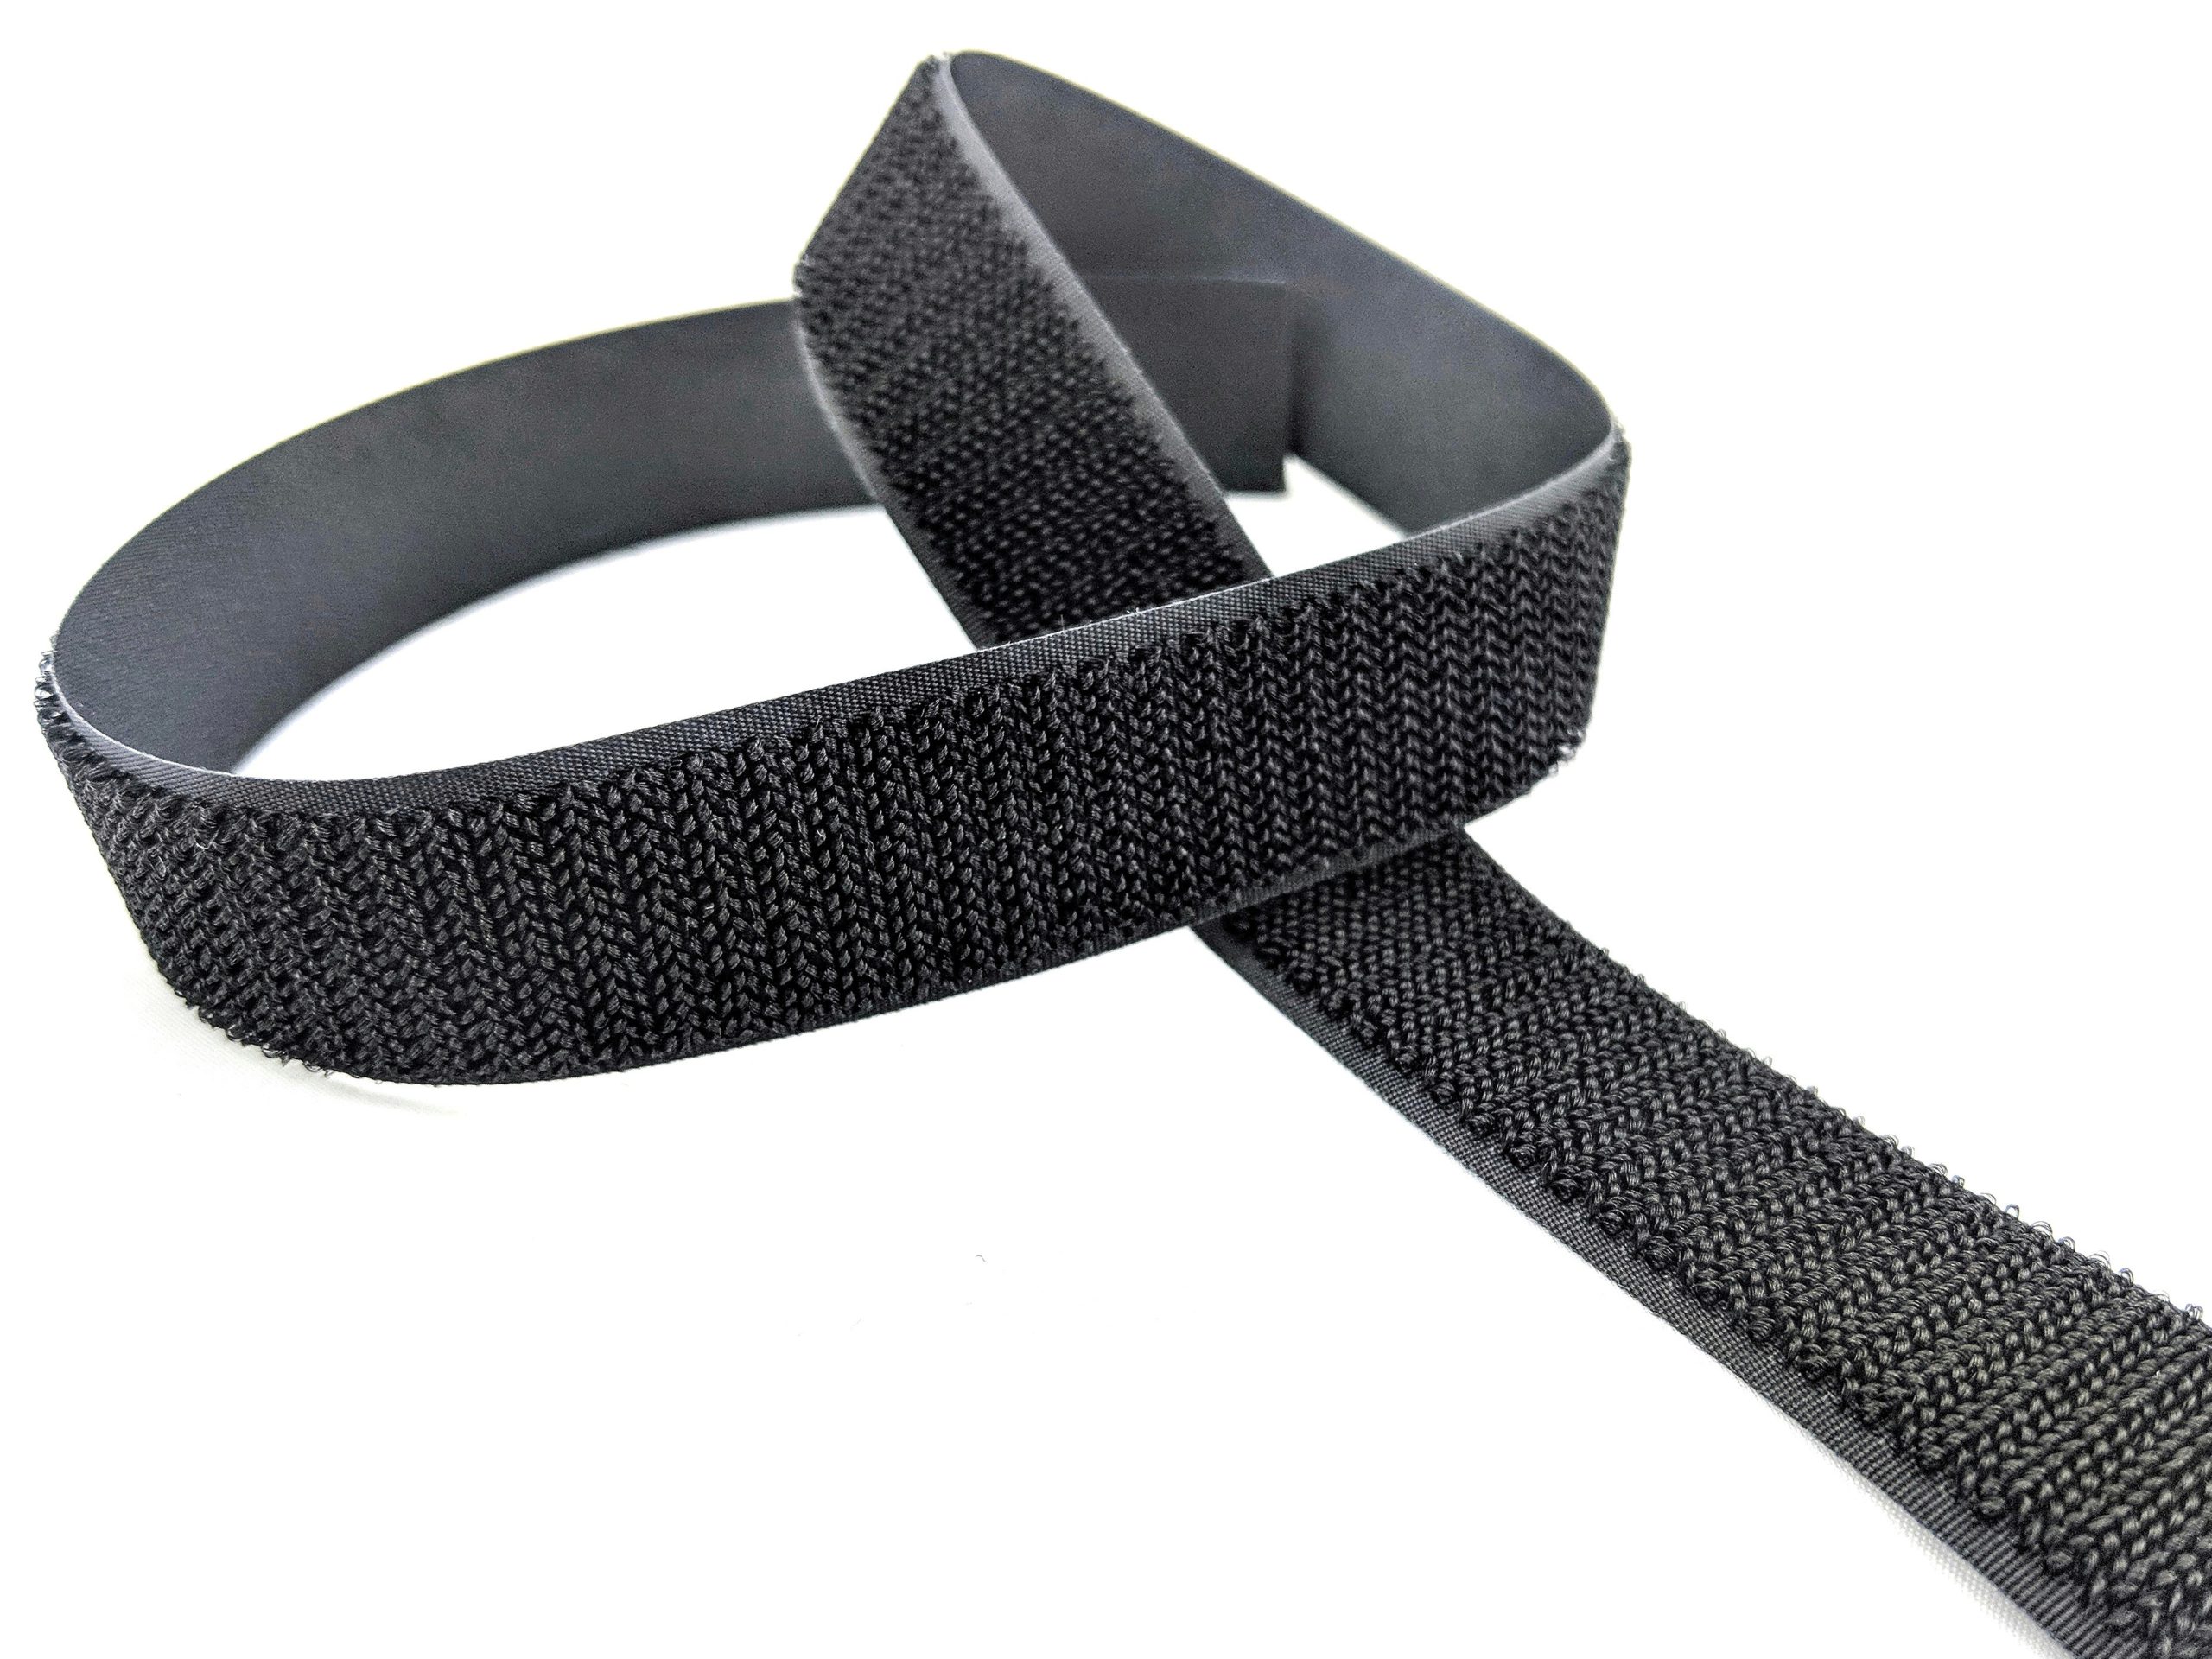 Hook & Loop Fasteners 16pc Velcro Tabs Black 22mm 